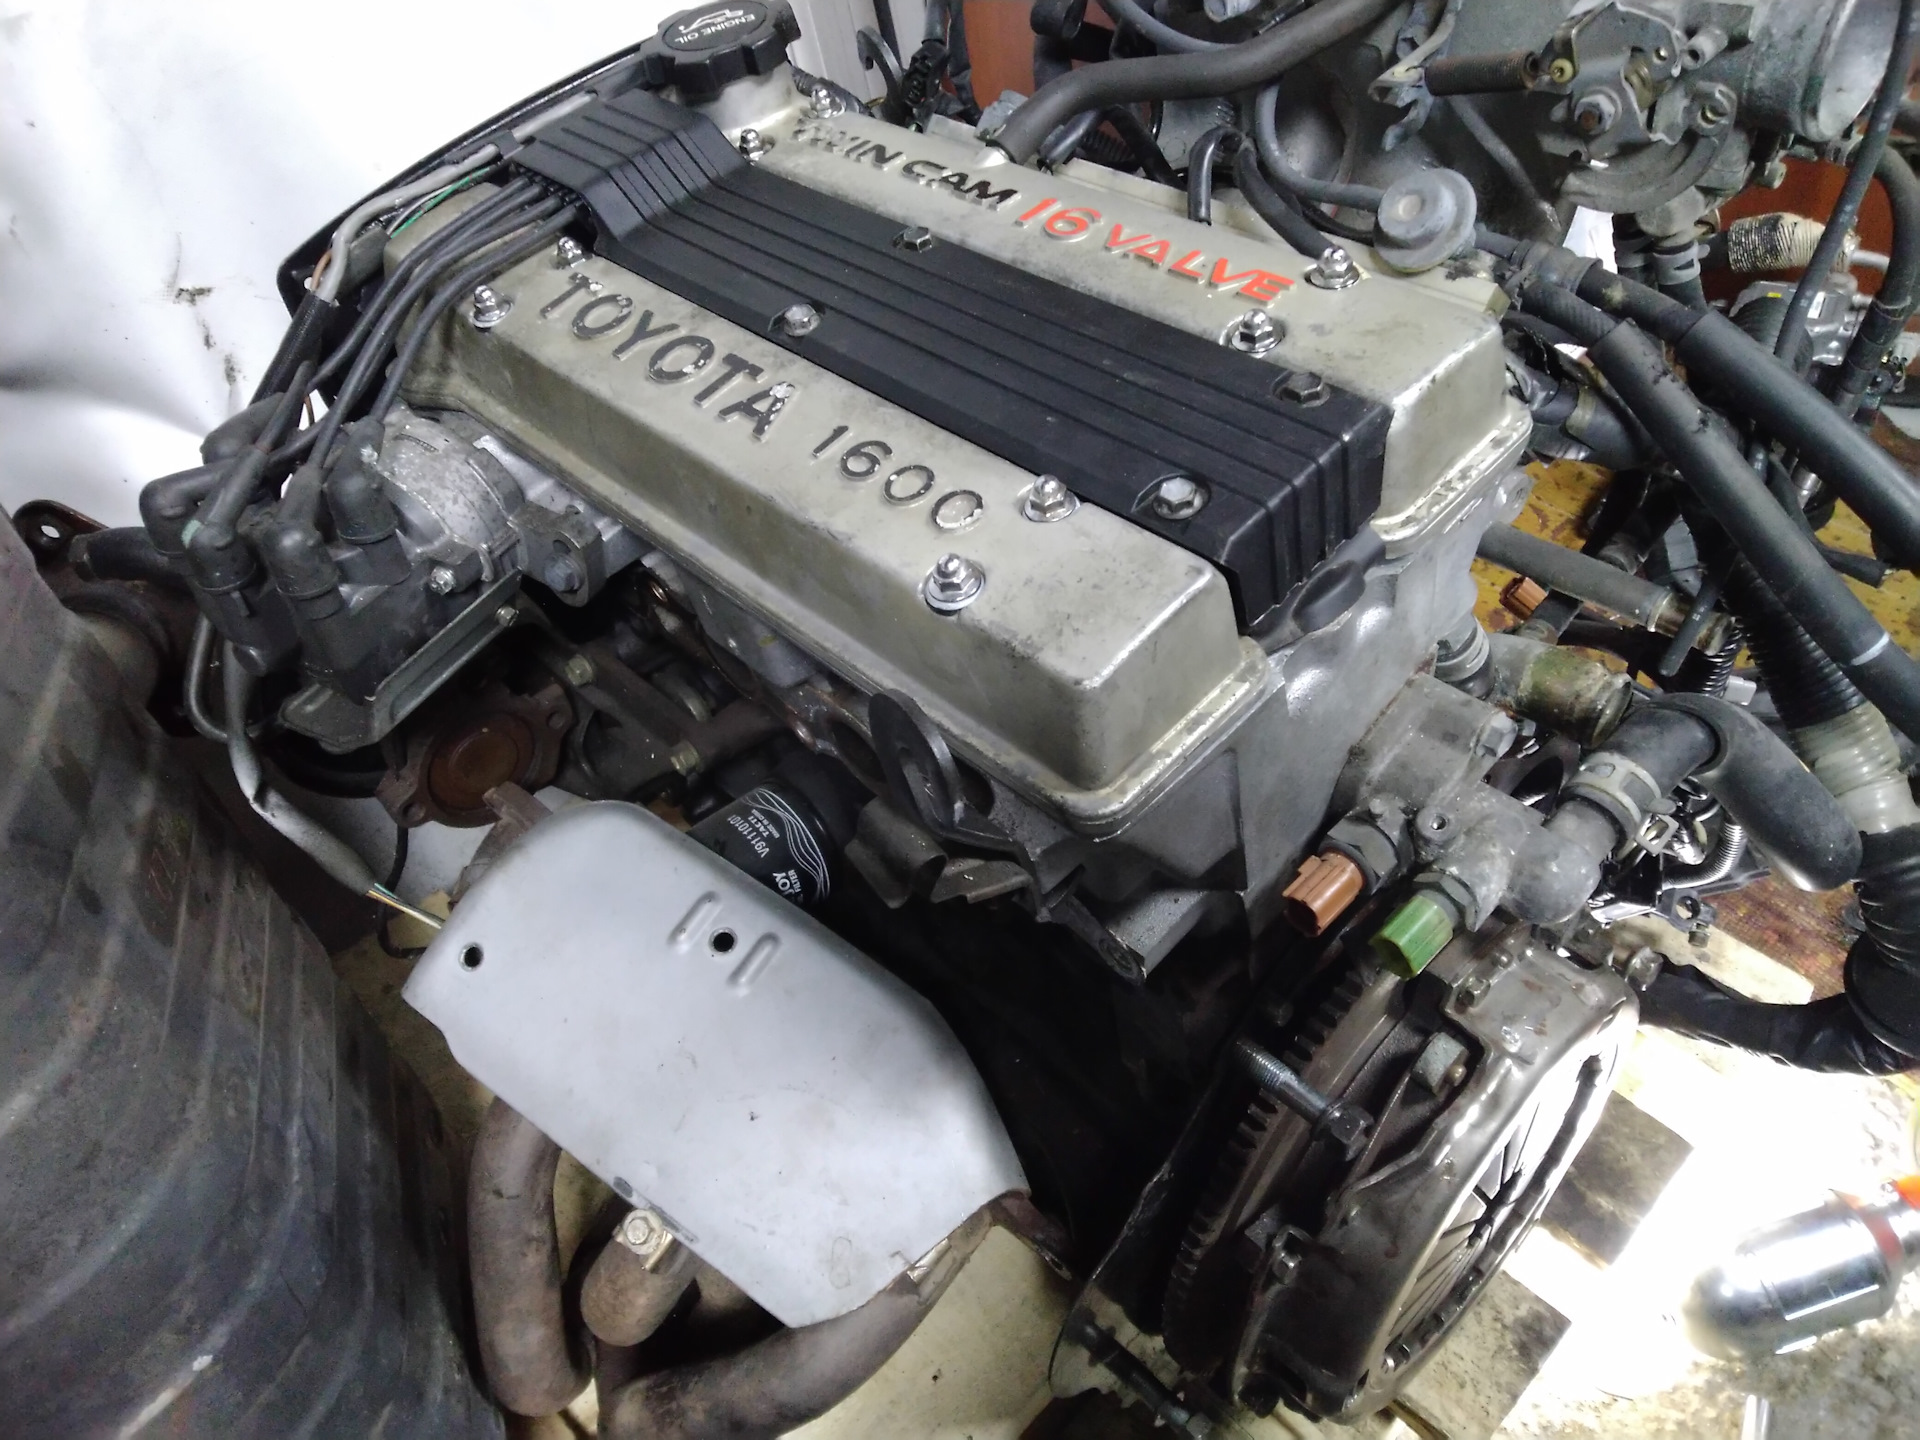 Двигатели корпорации Toyota моделей 4A-FHE и 4A-GZE отлично дополняют удачную линейку 4A и служат без проблем Узнайте больше о параметрах, плюсах и минусах моторов